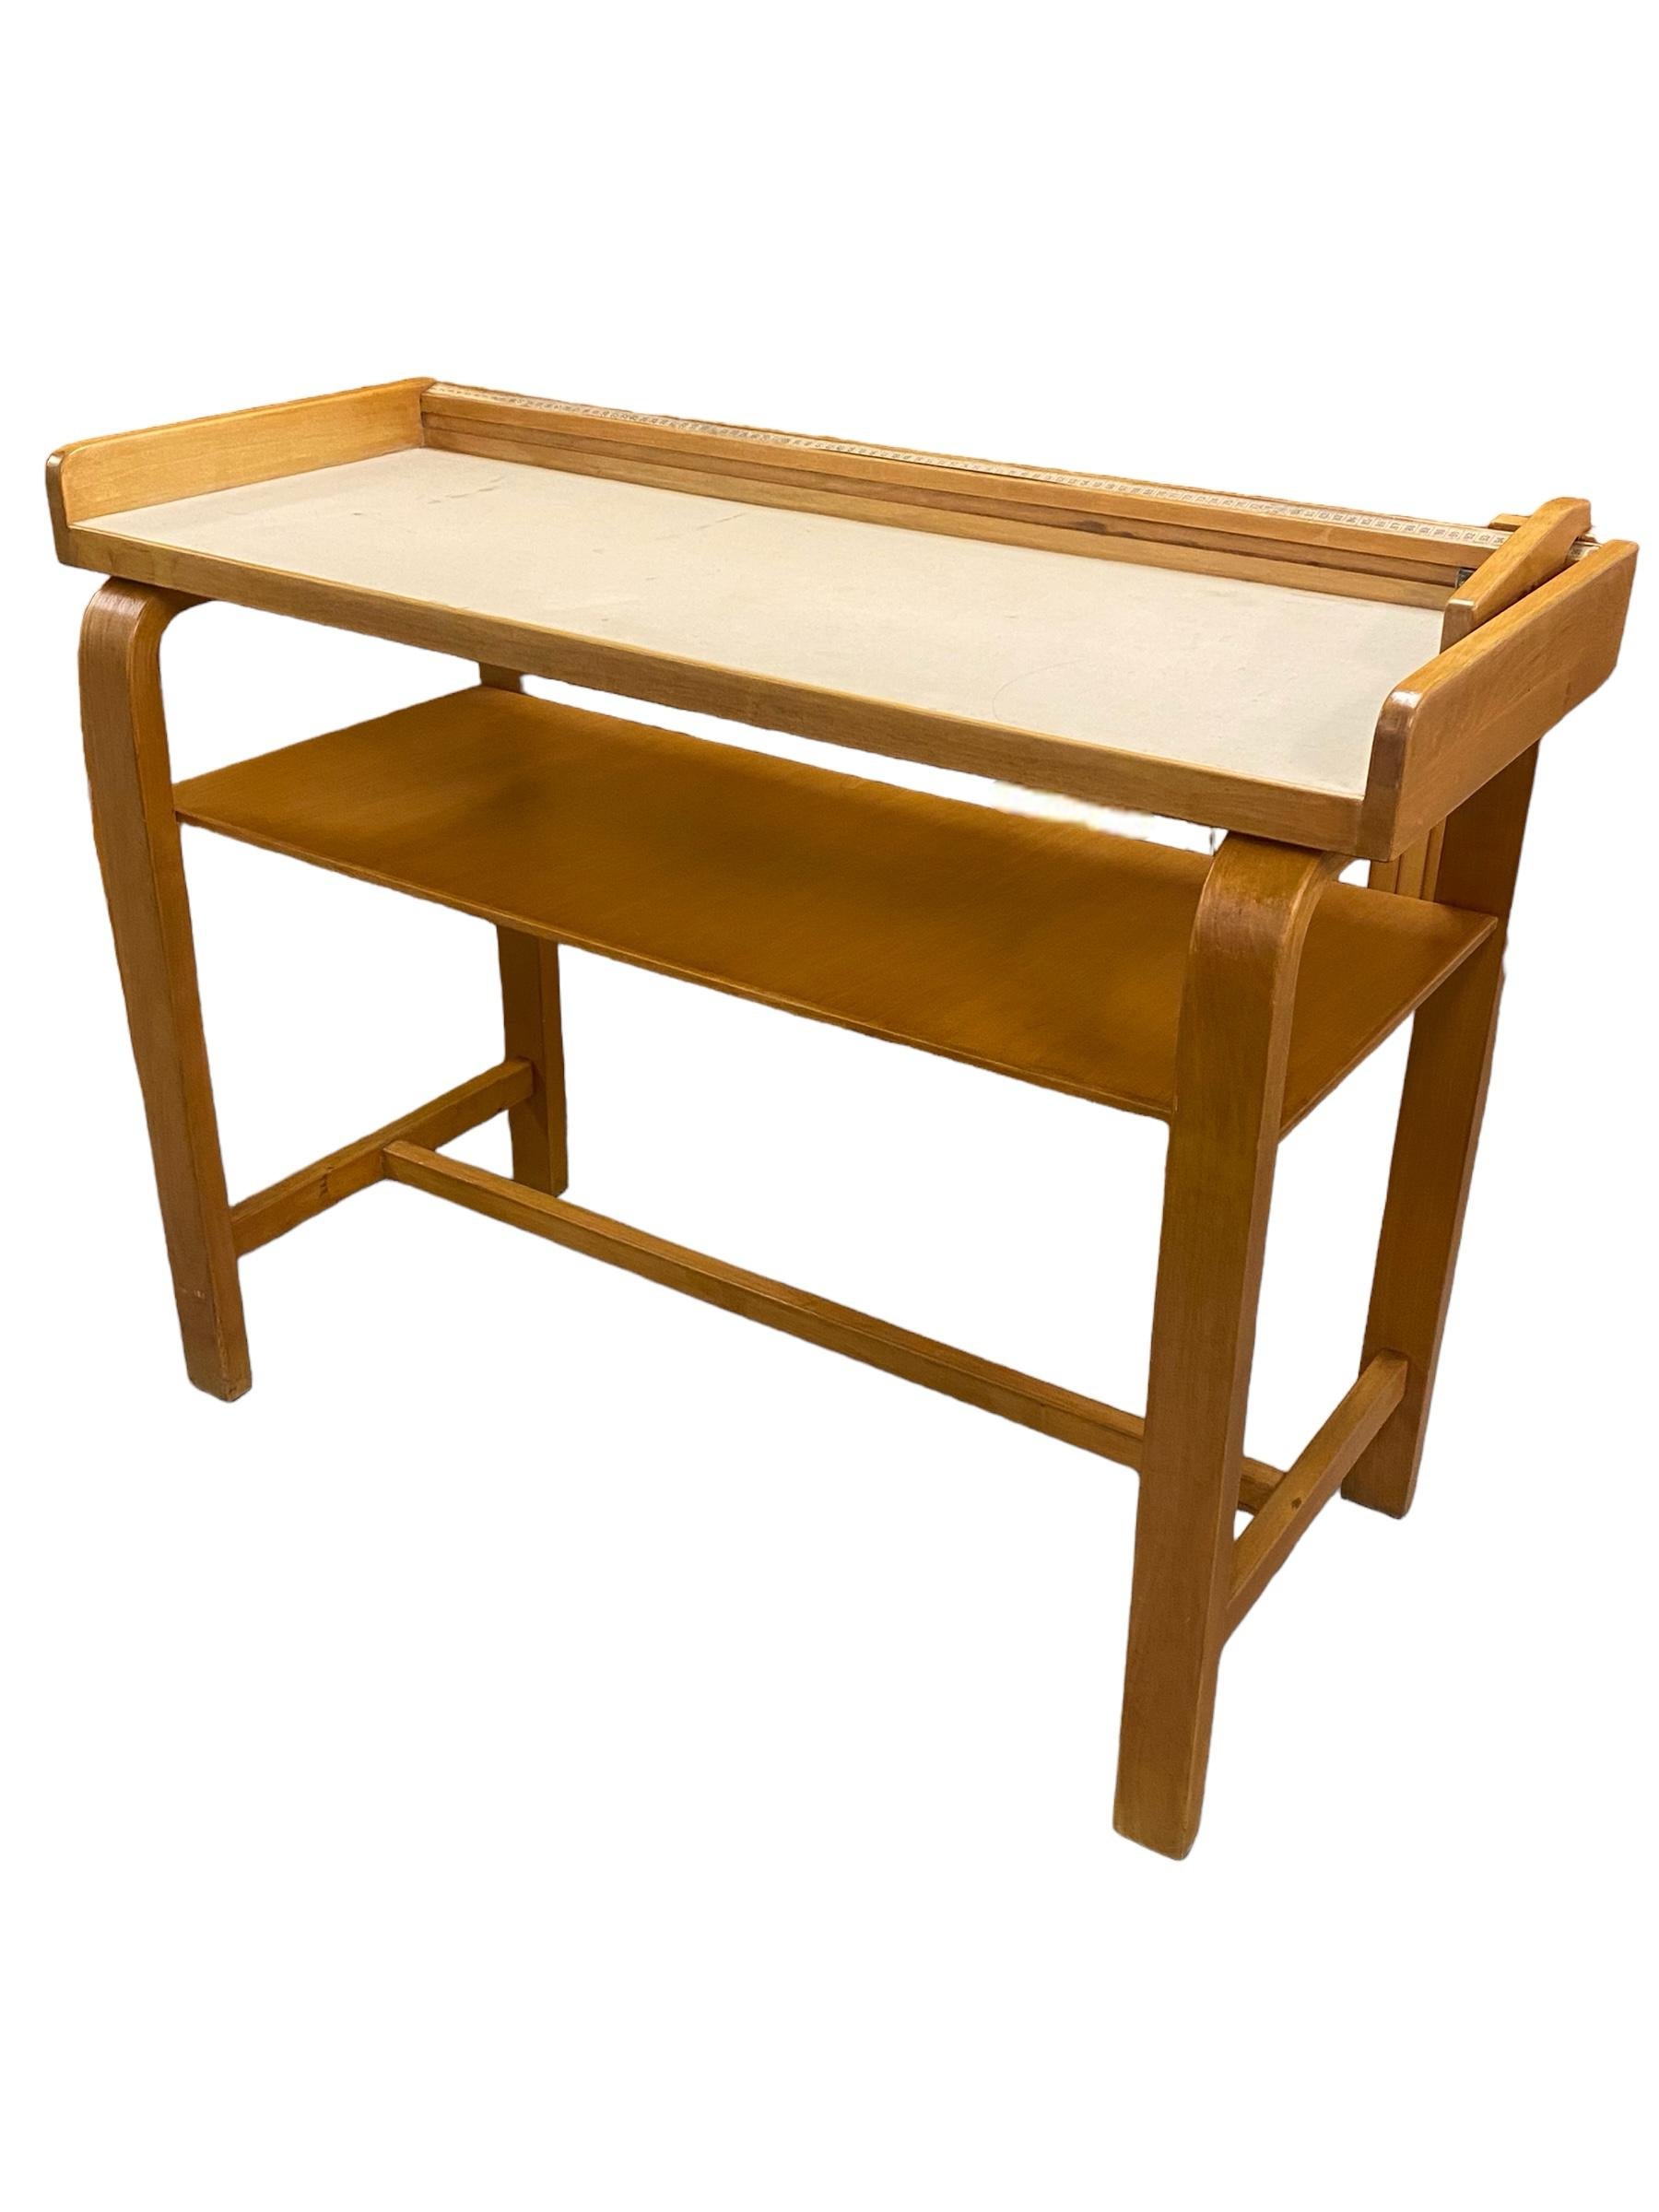 Dieser Tisch/Seitentisch wurde ursprünglich als Messtisch für Babys in Krankenhäusern entworfen. Er ist mit einer metrischen Maßeinheit versehen und hat ein verschiebbares Holzstück, das sich an die Länge des Babys anpassen lässt.

Er ist nicht nur